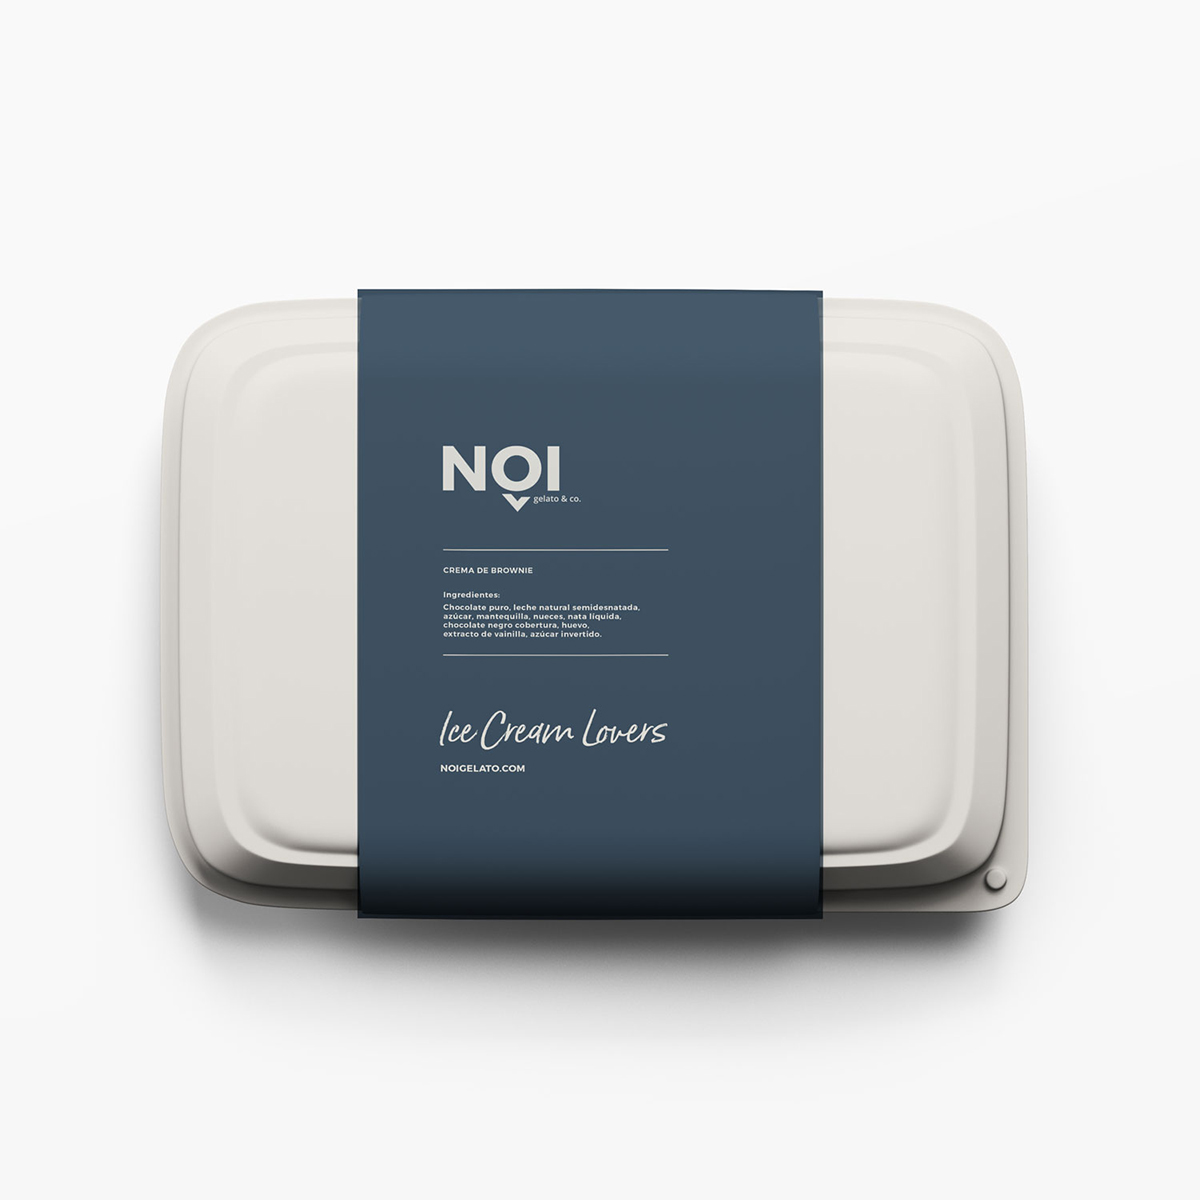 Diseño y desarrollo de identidad visual corporativa para NOI Gelato&Co. Vista detalle packaging para helado.